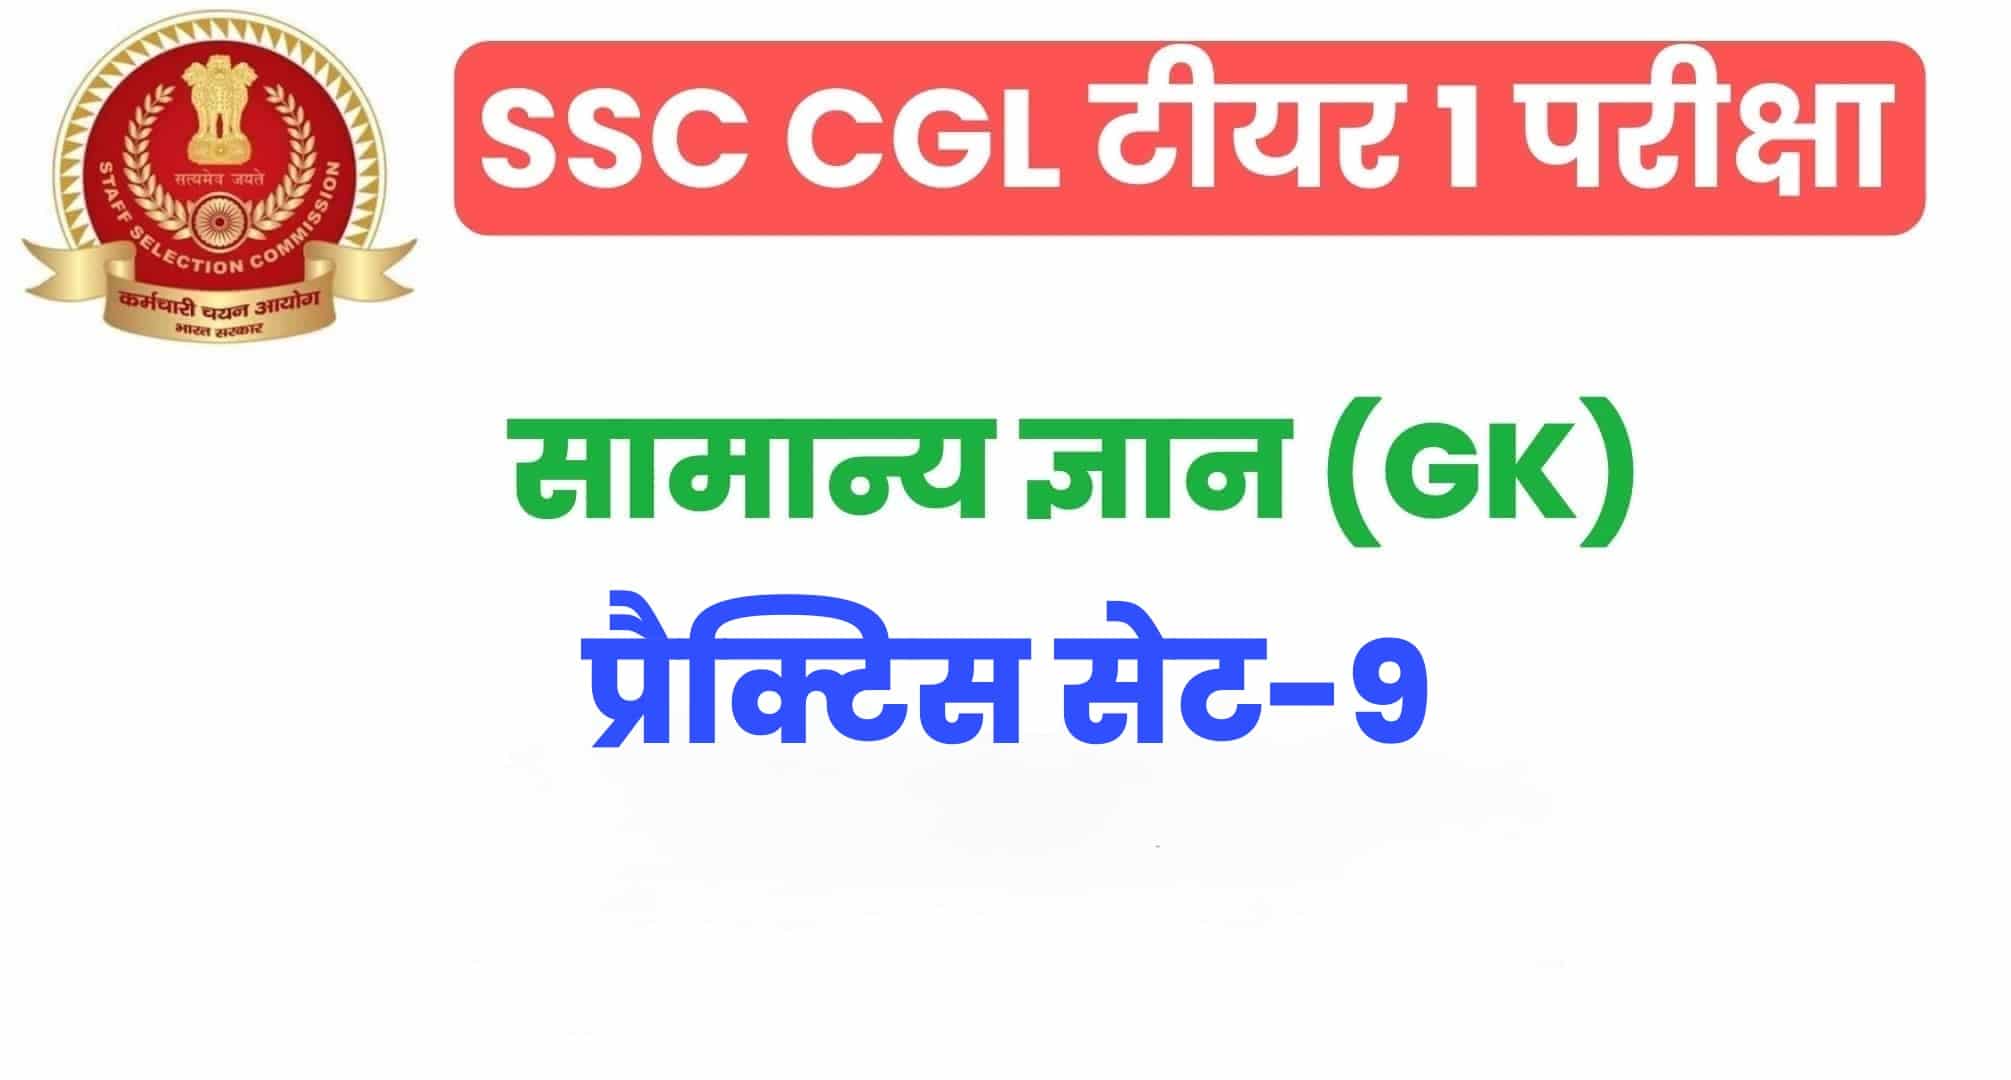 SSC CGL GK/GS प्रैक्टिस सेट 9 :  सामान्य ज्ञान के 25 अतिमहत्वपूर्ण प्रश्न, परीक्षा से पहले जरूर अध्ययन करें